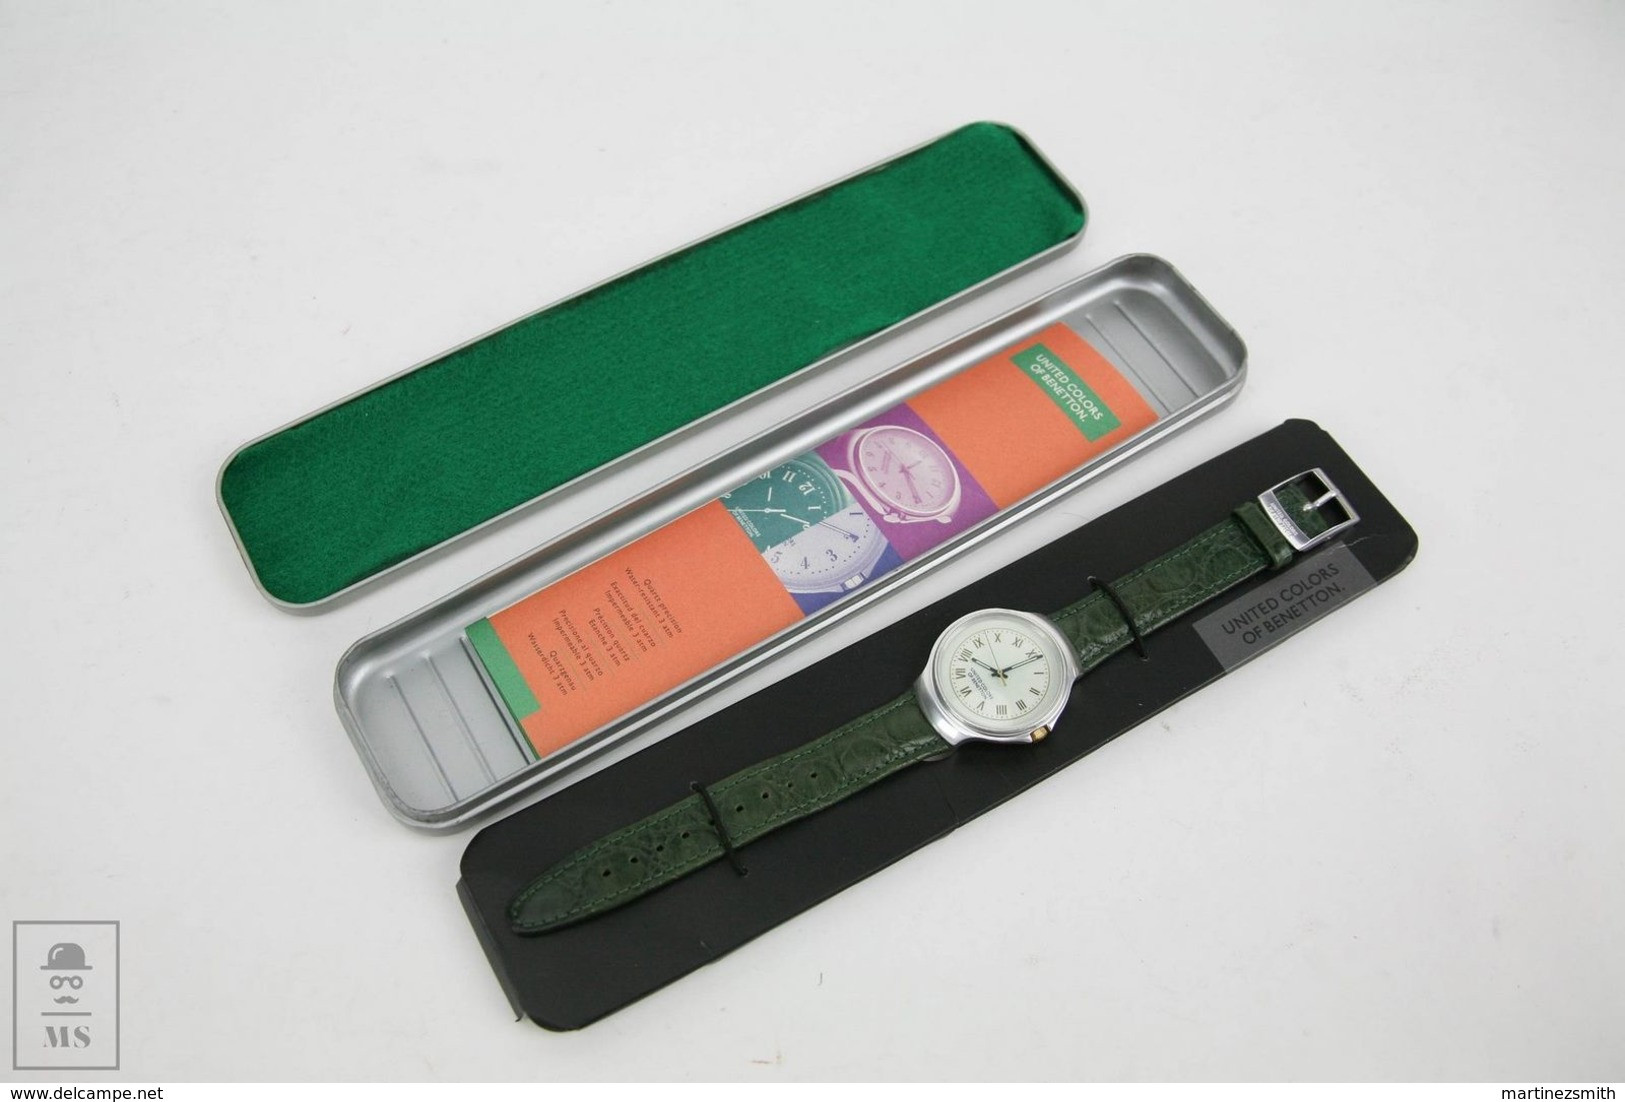 United Colors Of Benetton - Quartz Watch - Original Box - Pre Owned - 1990's - Relojes Publicitarios